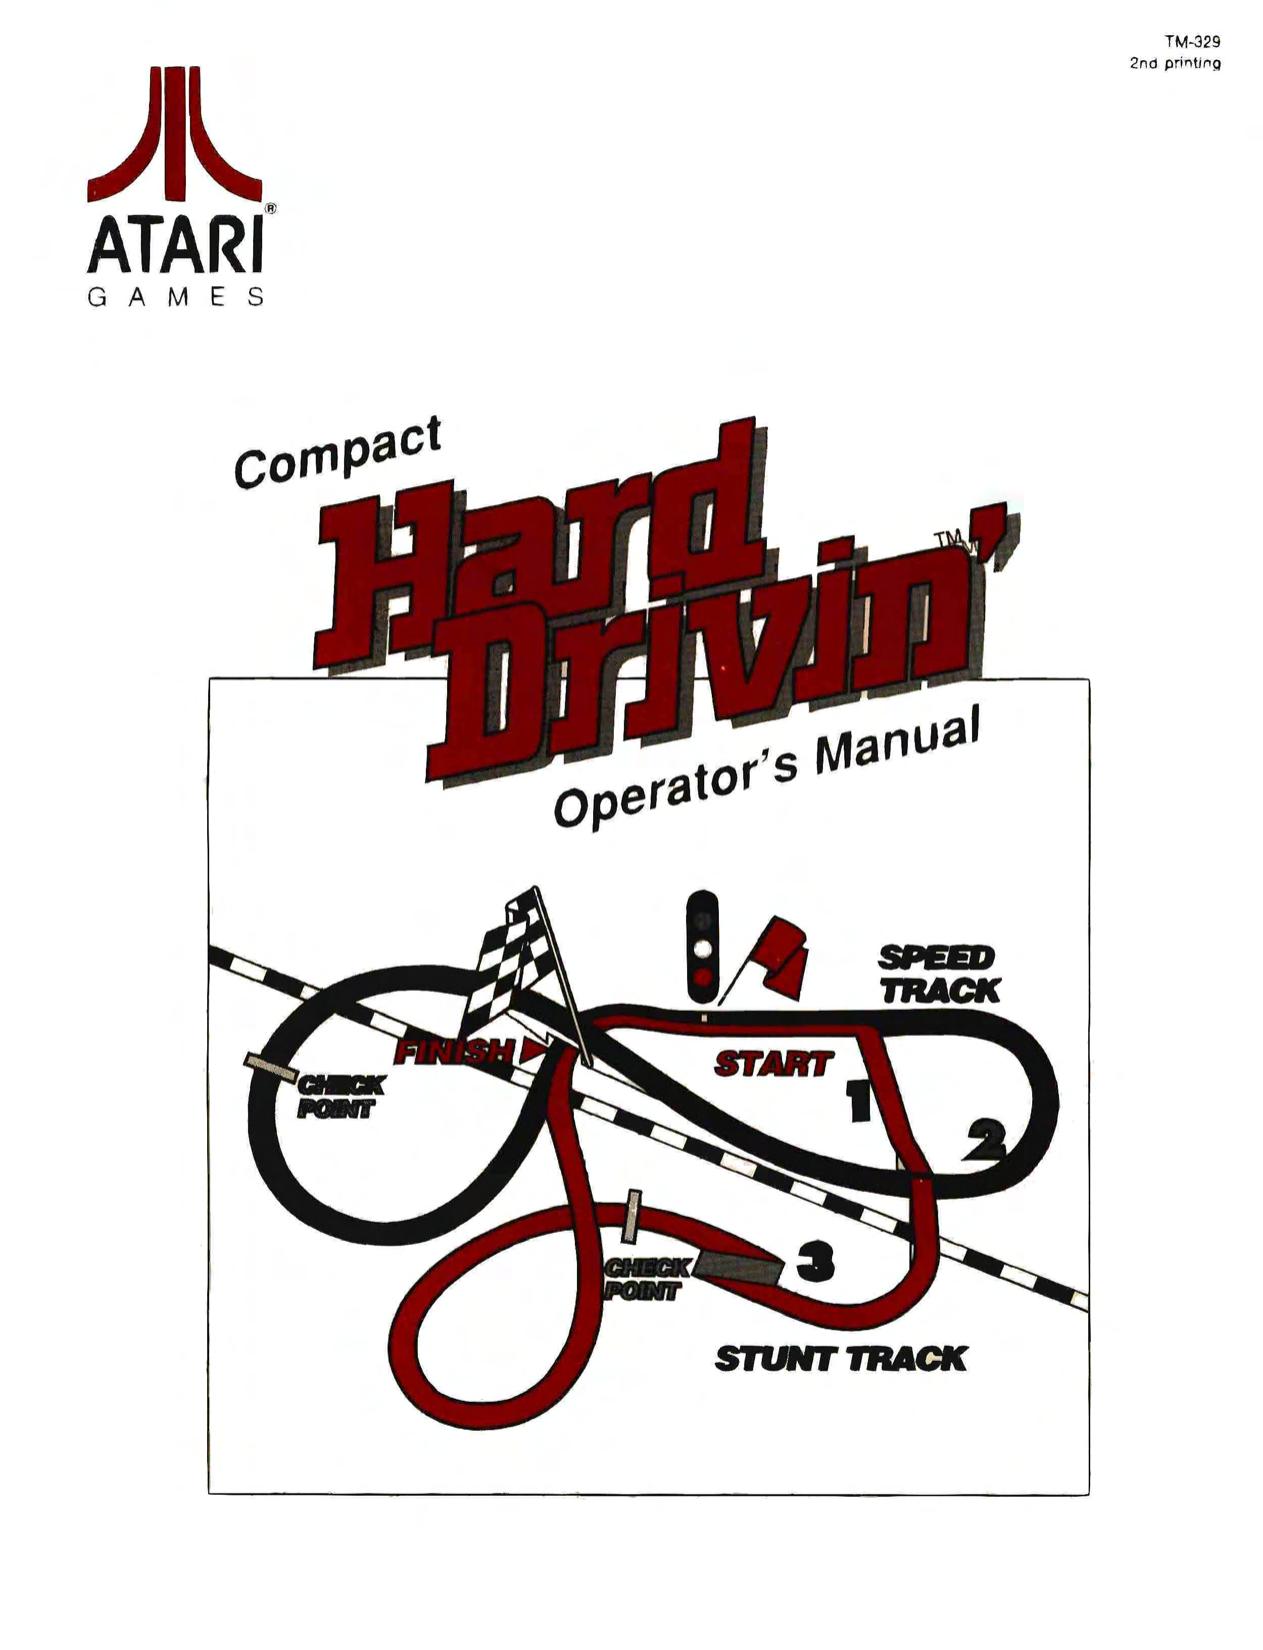 Hard Drivin Operator's manual - 3rd printing